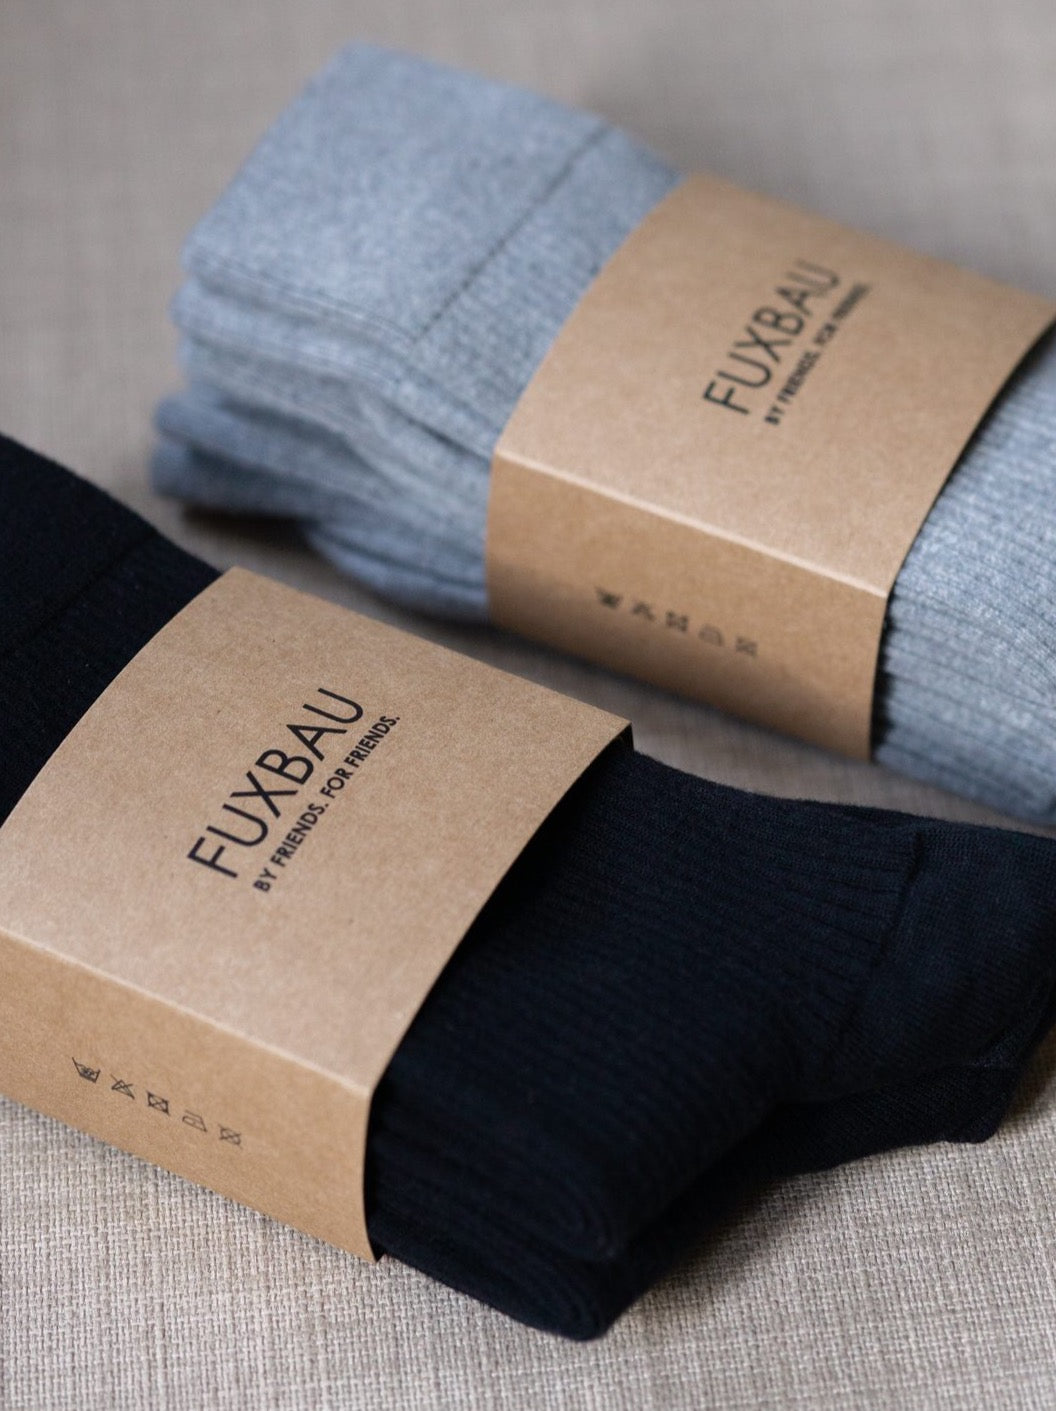 FUXBAU Fair Fashion Basic Socken in schwarz und grau aus 100% GOTS zertifizierter Biobaumwolle